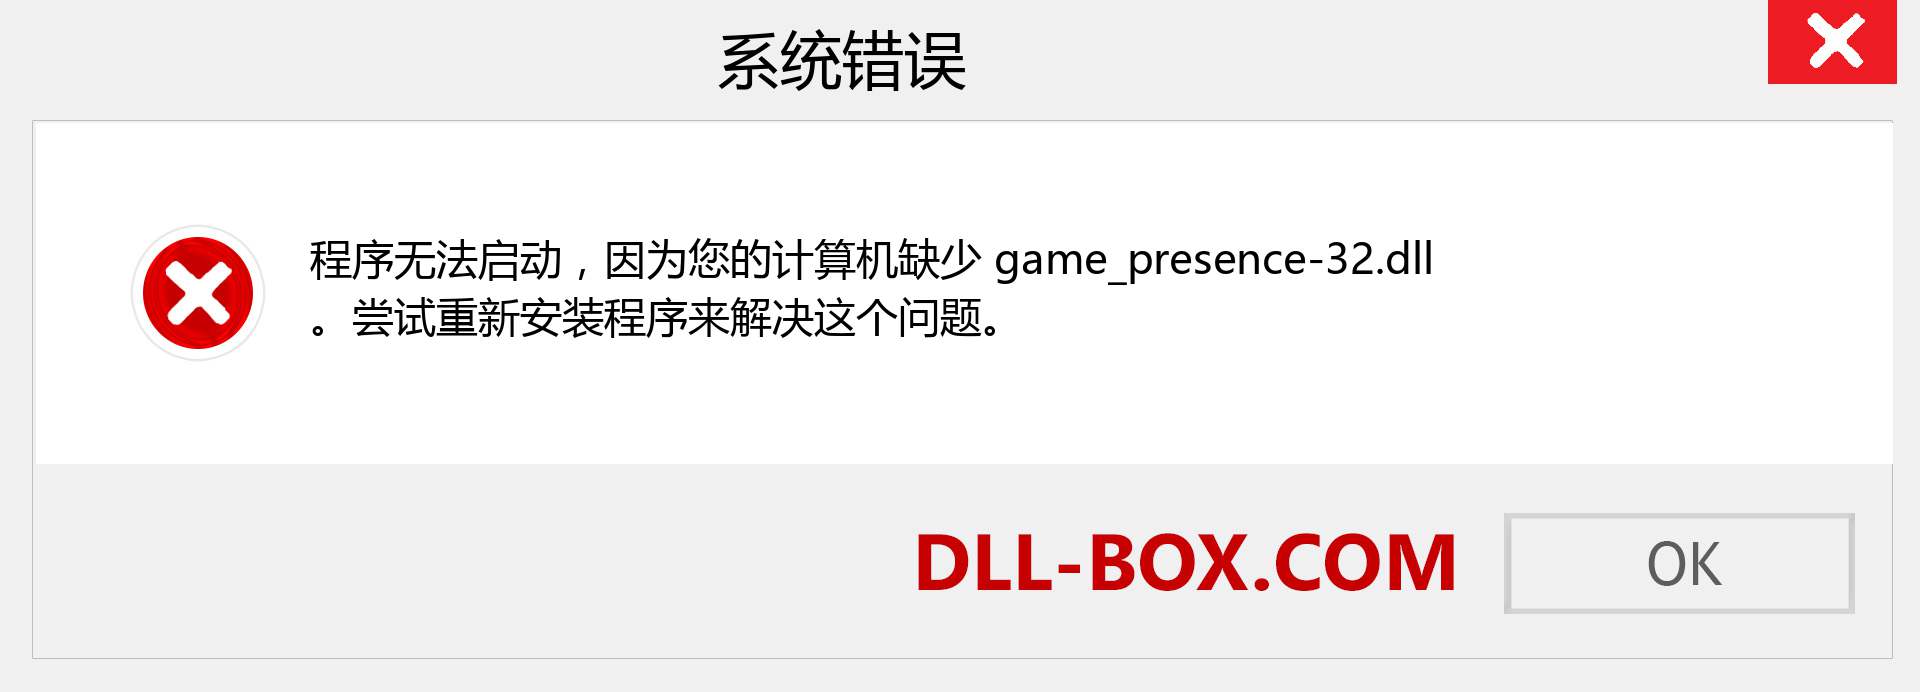 game_presence-32.dll 文件丢失？。 适用于 Windows 7、8、10 的下载 - 修复 Windows、照片、图像上的 game_presence-32 dll 丢失错误